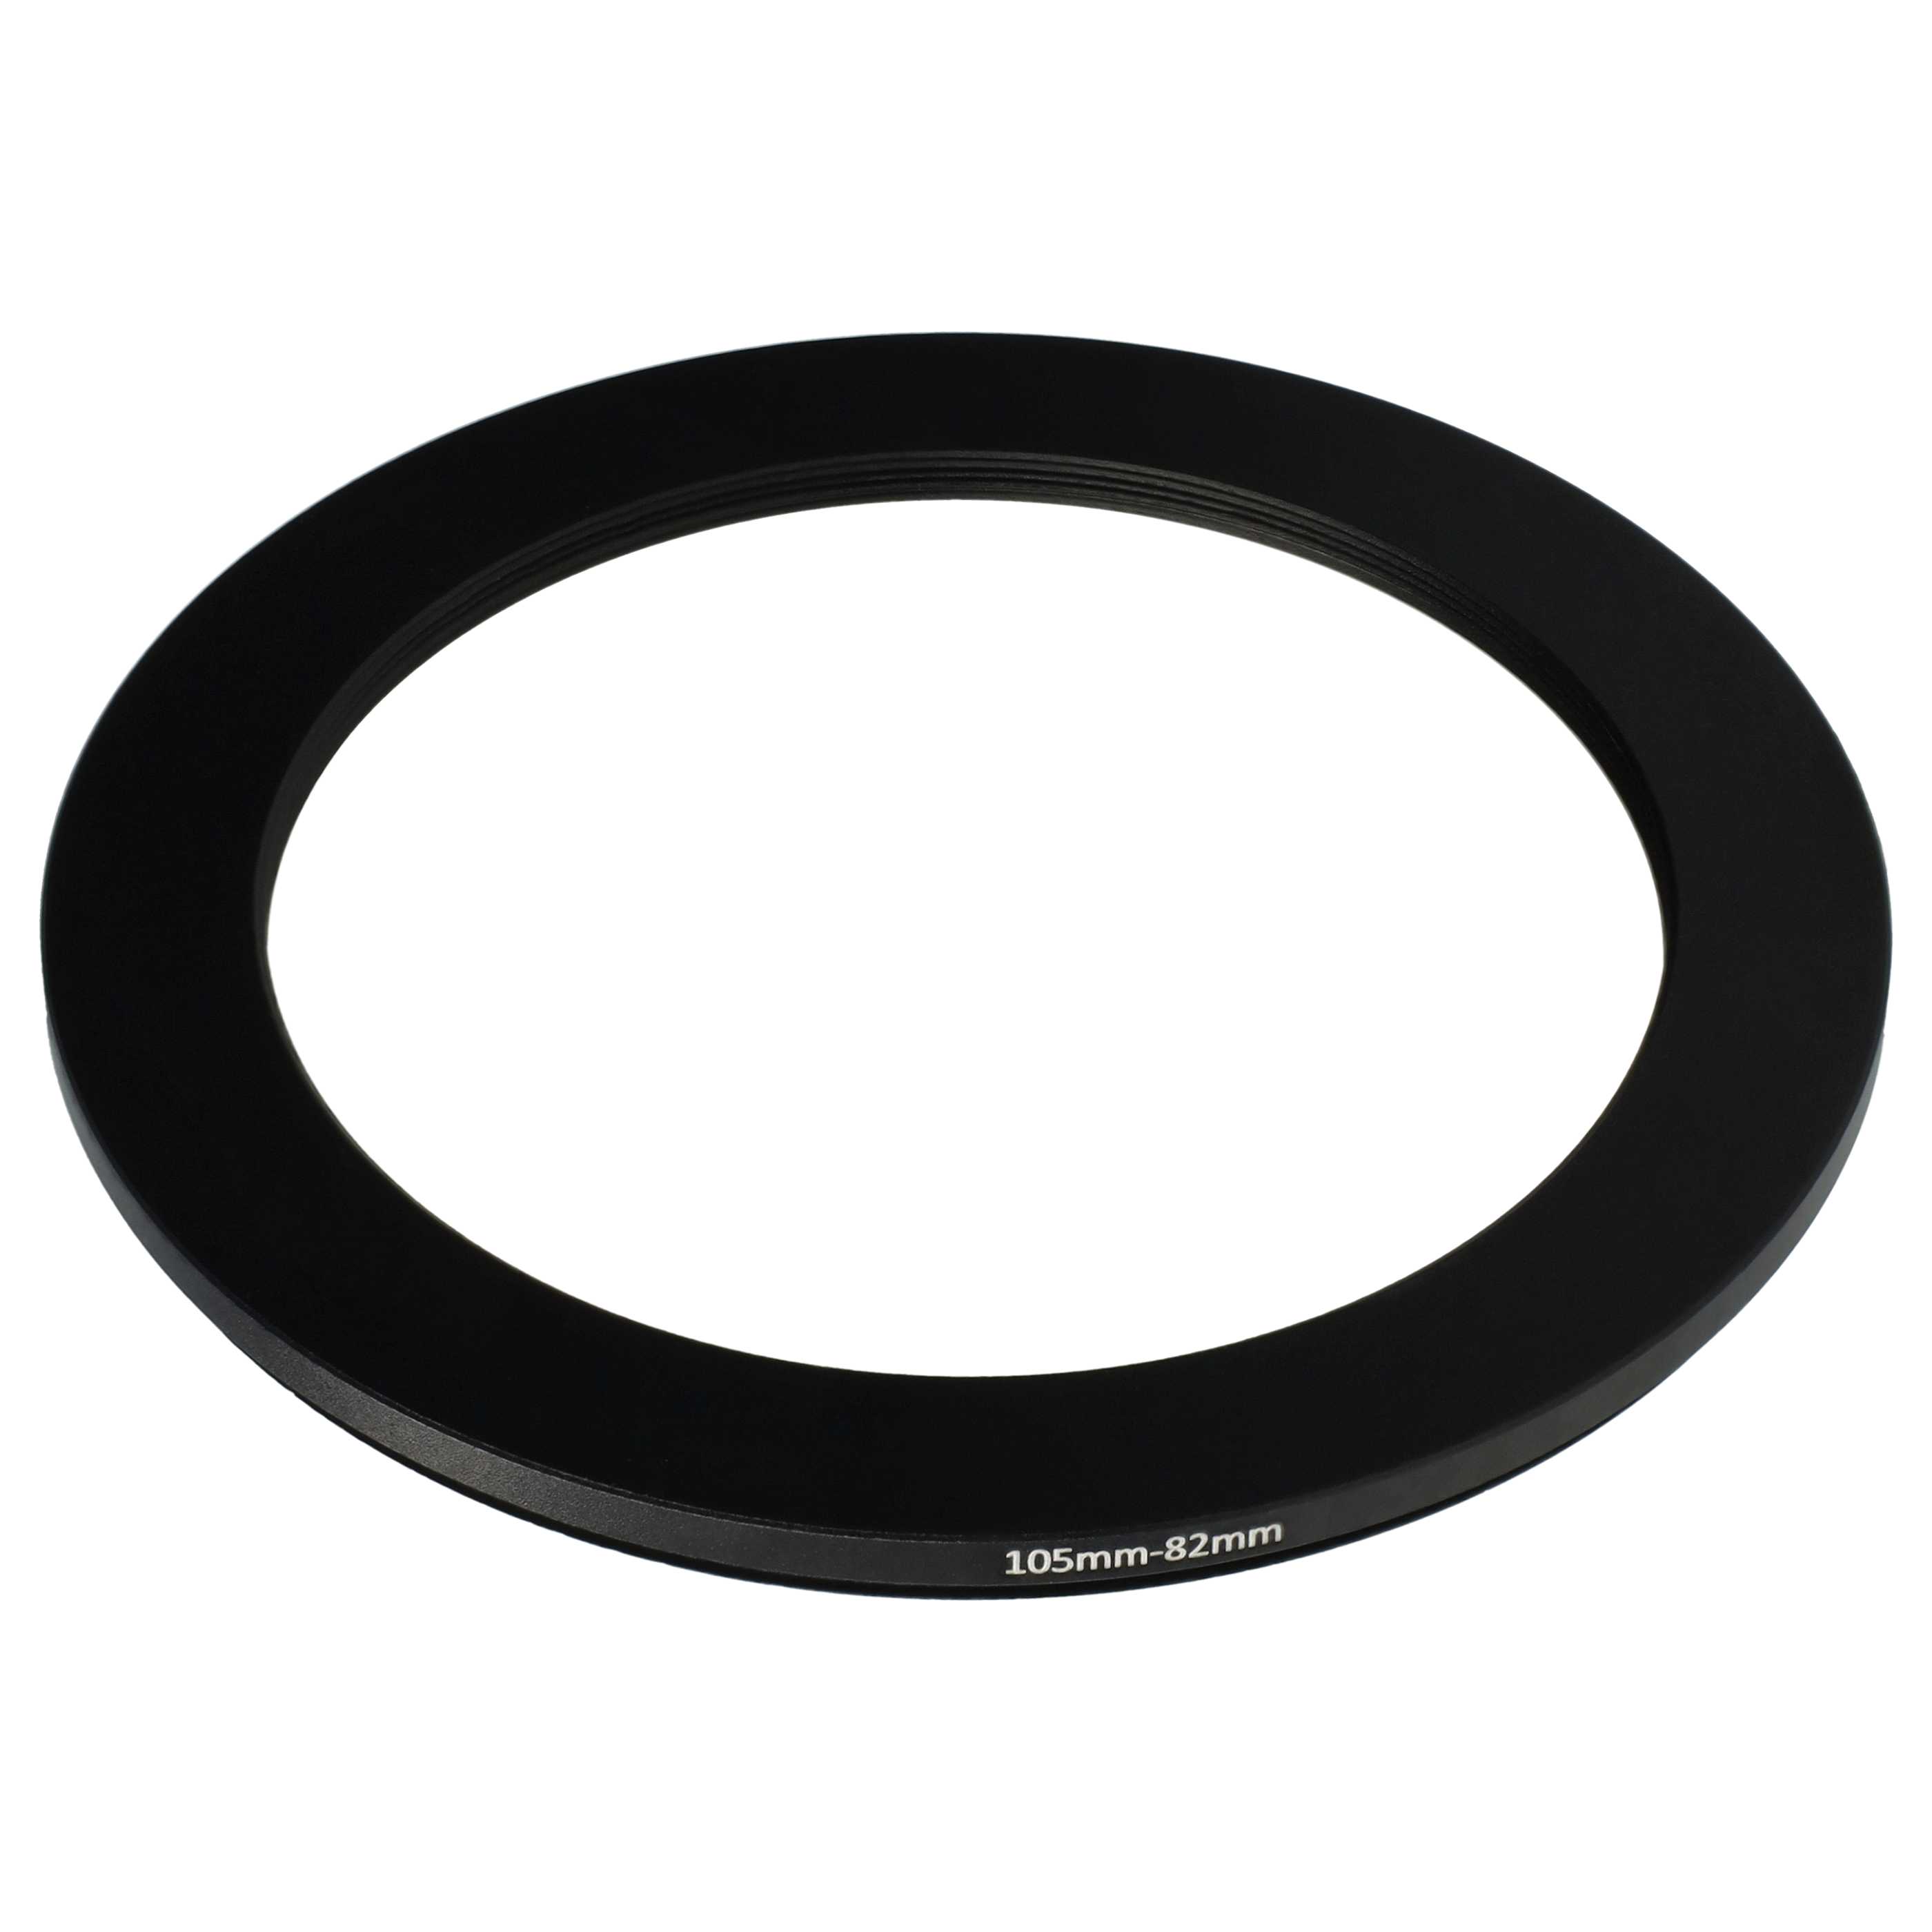 Anillo adaptador Step Down de 105 mm a 82 mm para objetivo de la cámara - Adaptador de filtro, metal, negro